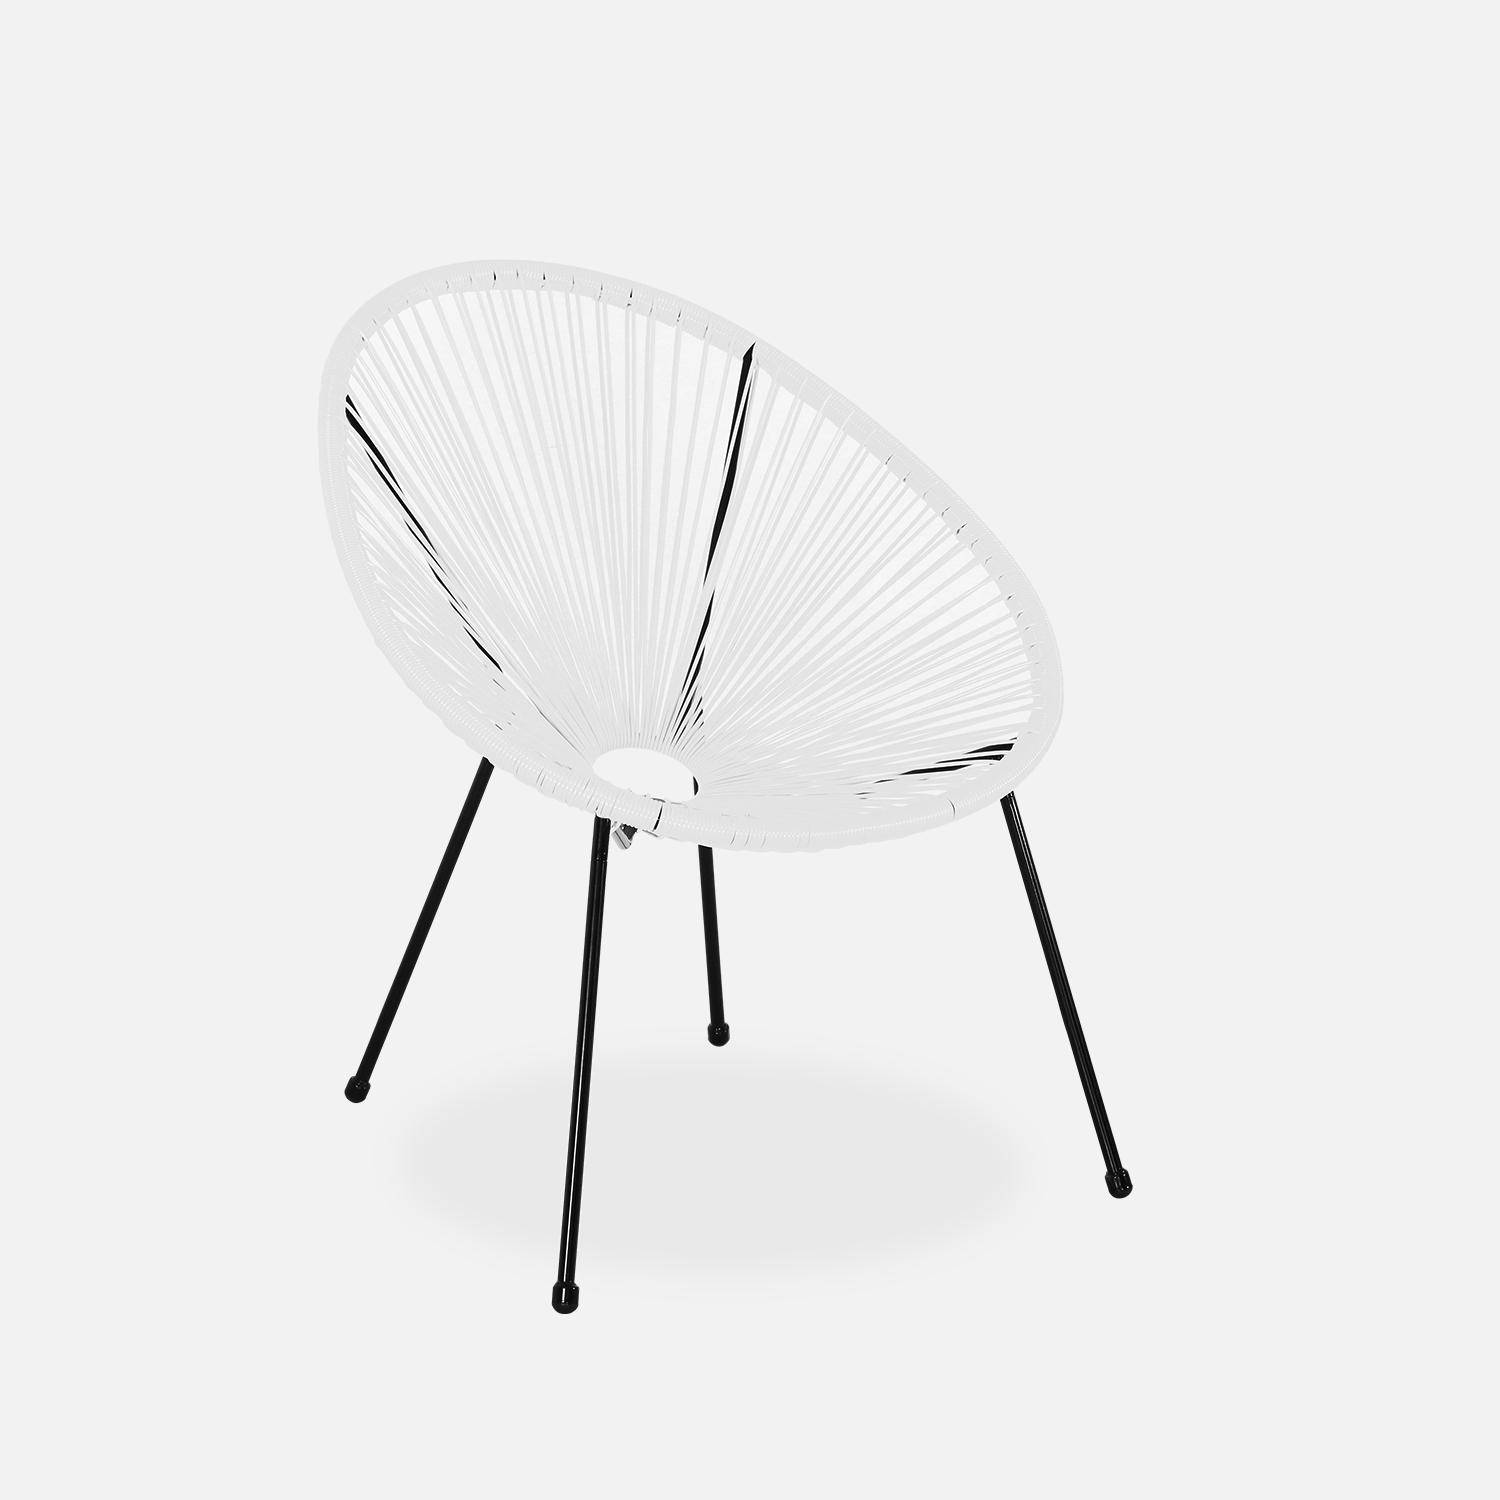 Lot de 2 fauteuils design Oeuf - Acapulco Blanc - Fauteuils 4 pieds design rétro, cordage plastique, intérieur / extérieur Photo3